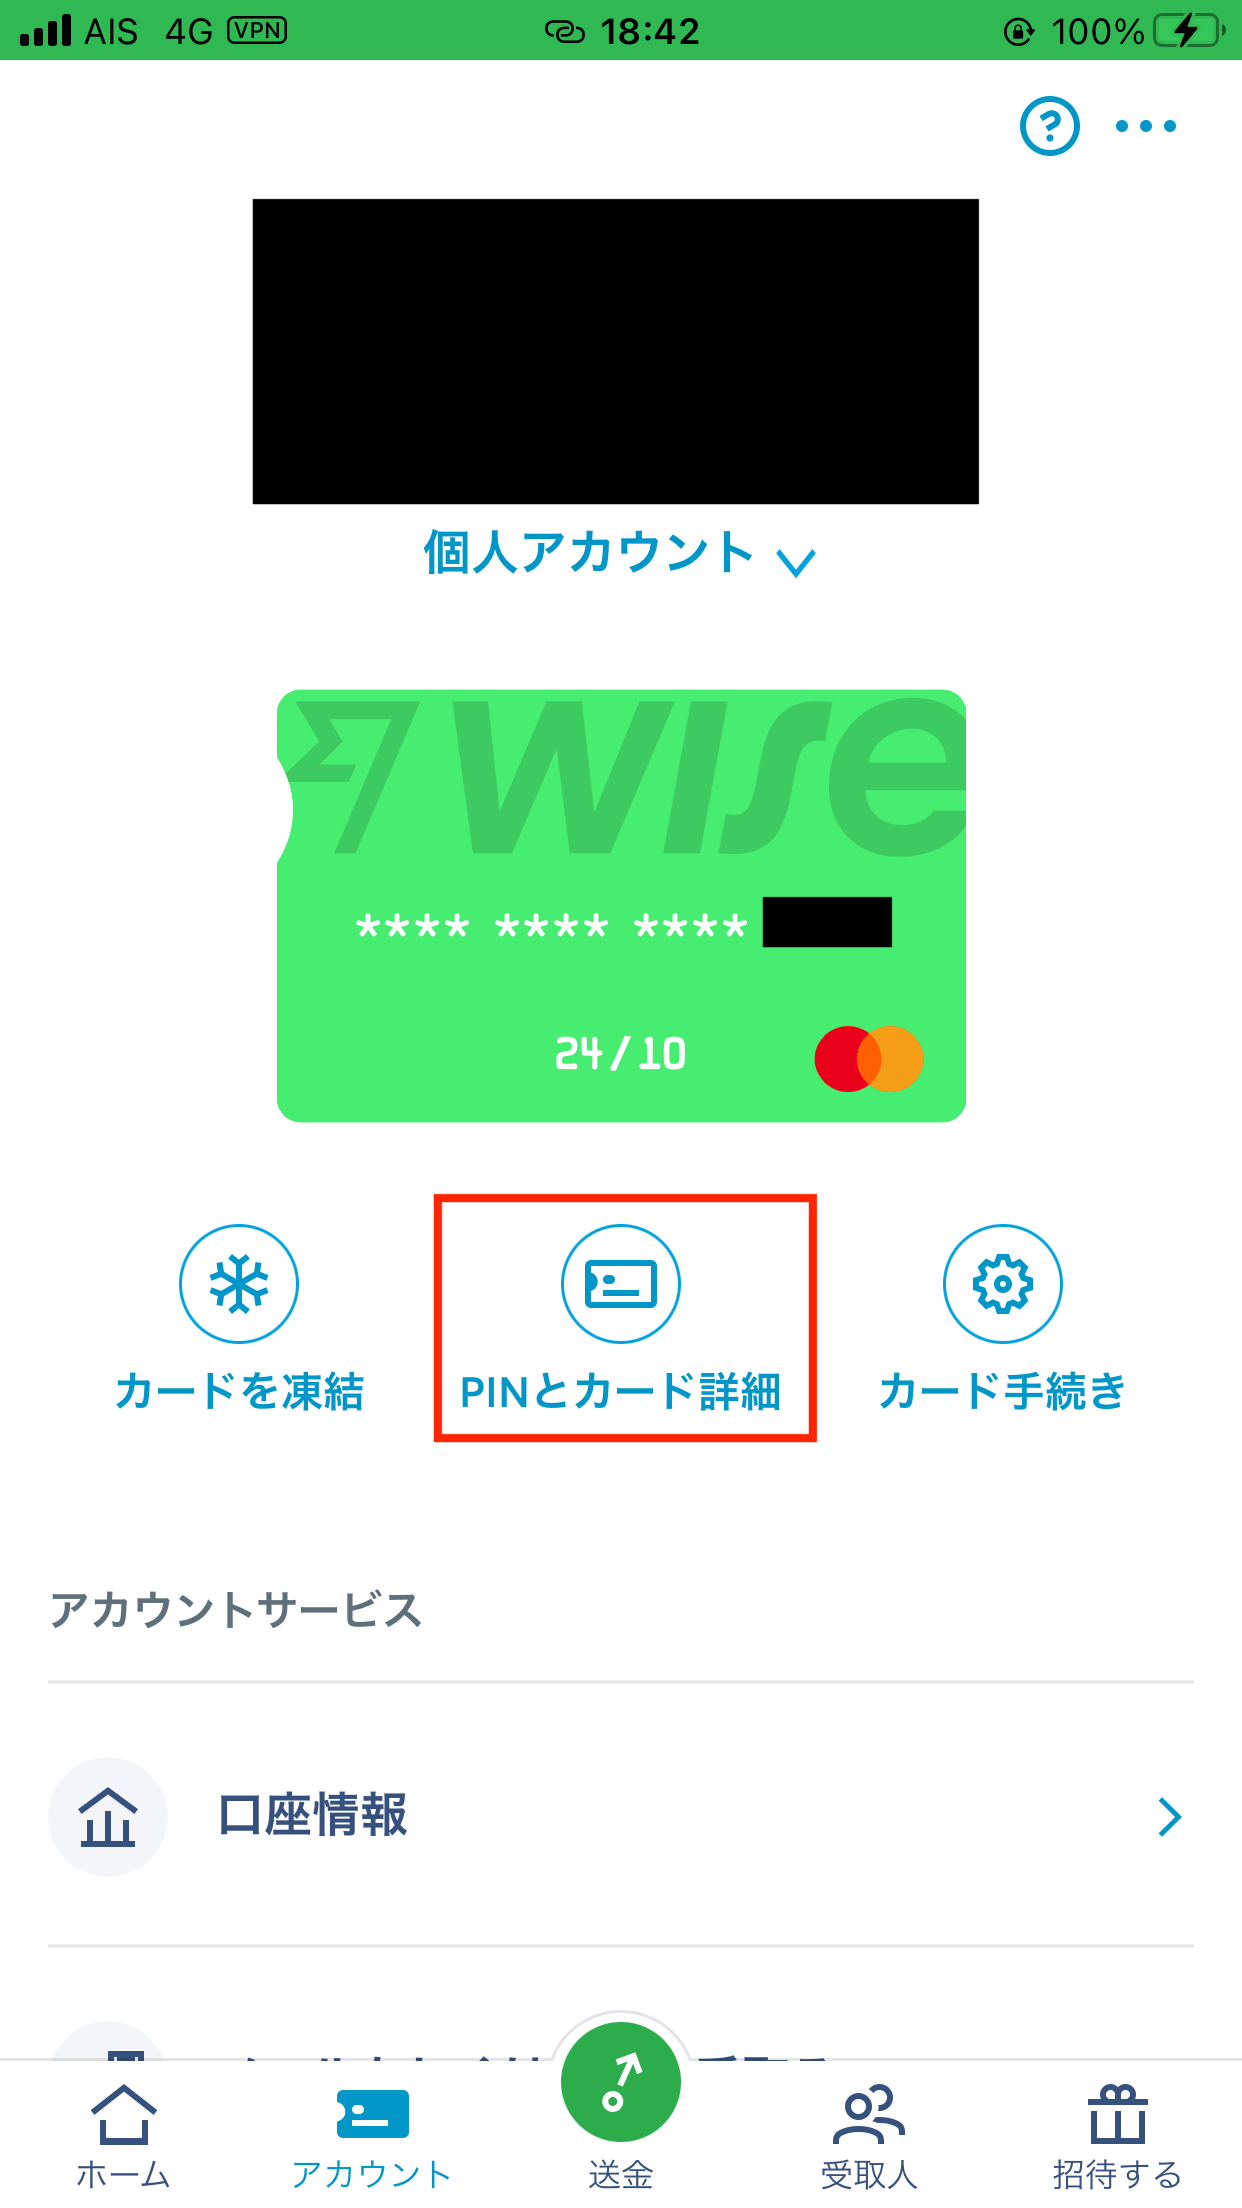 Wise：『PINとカード詳細』をタップ